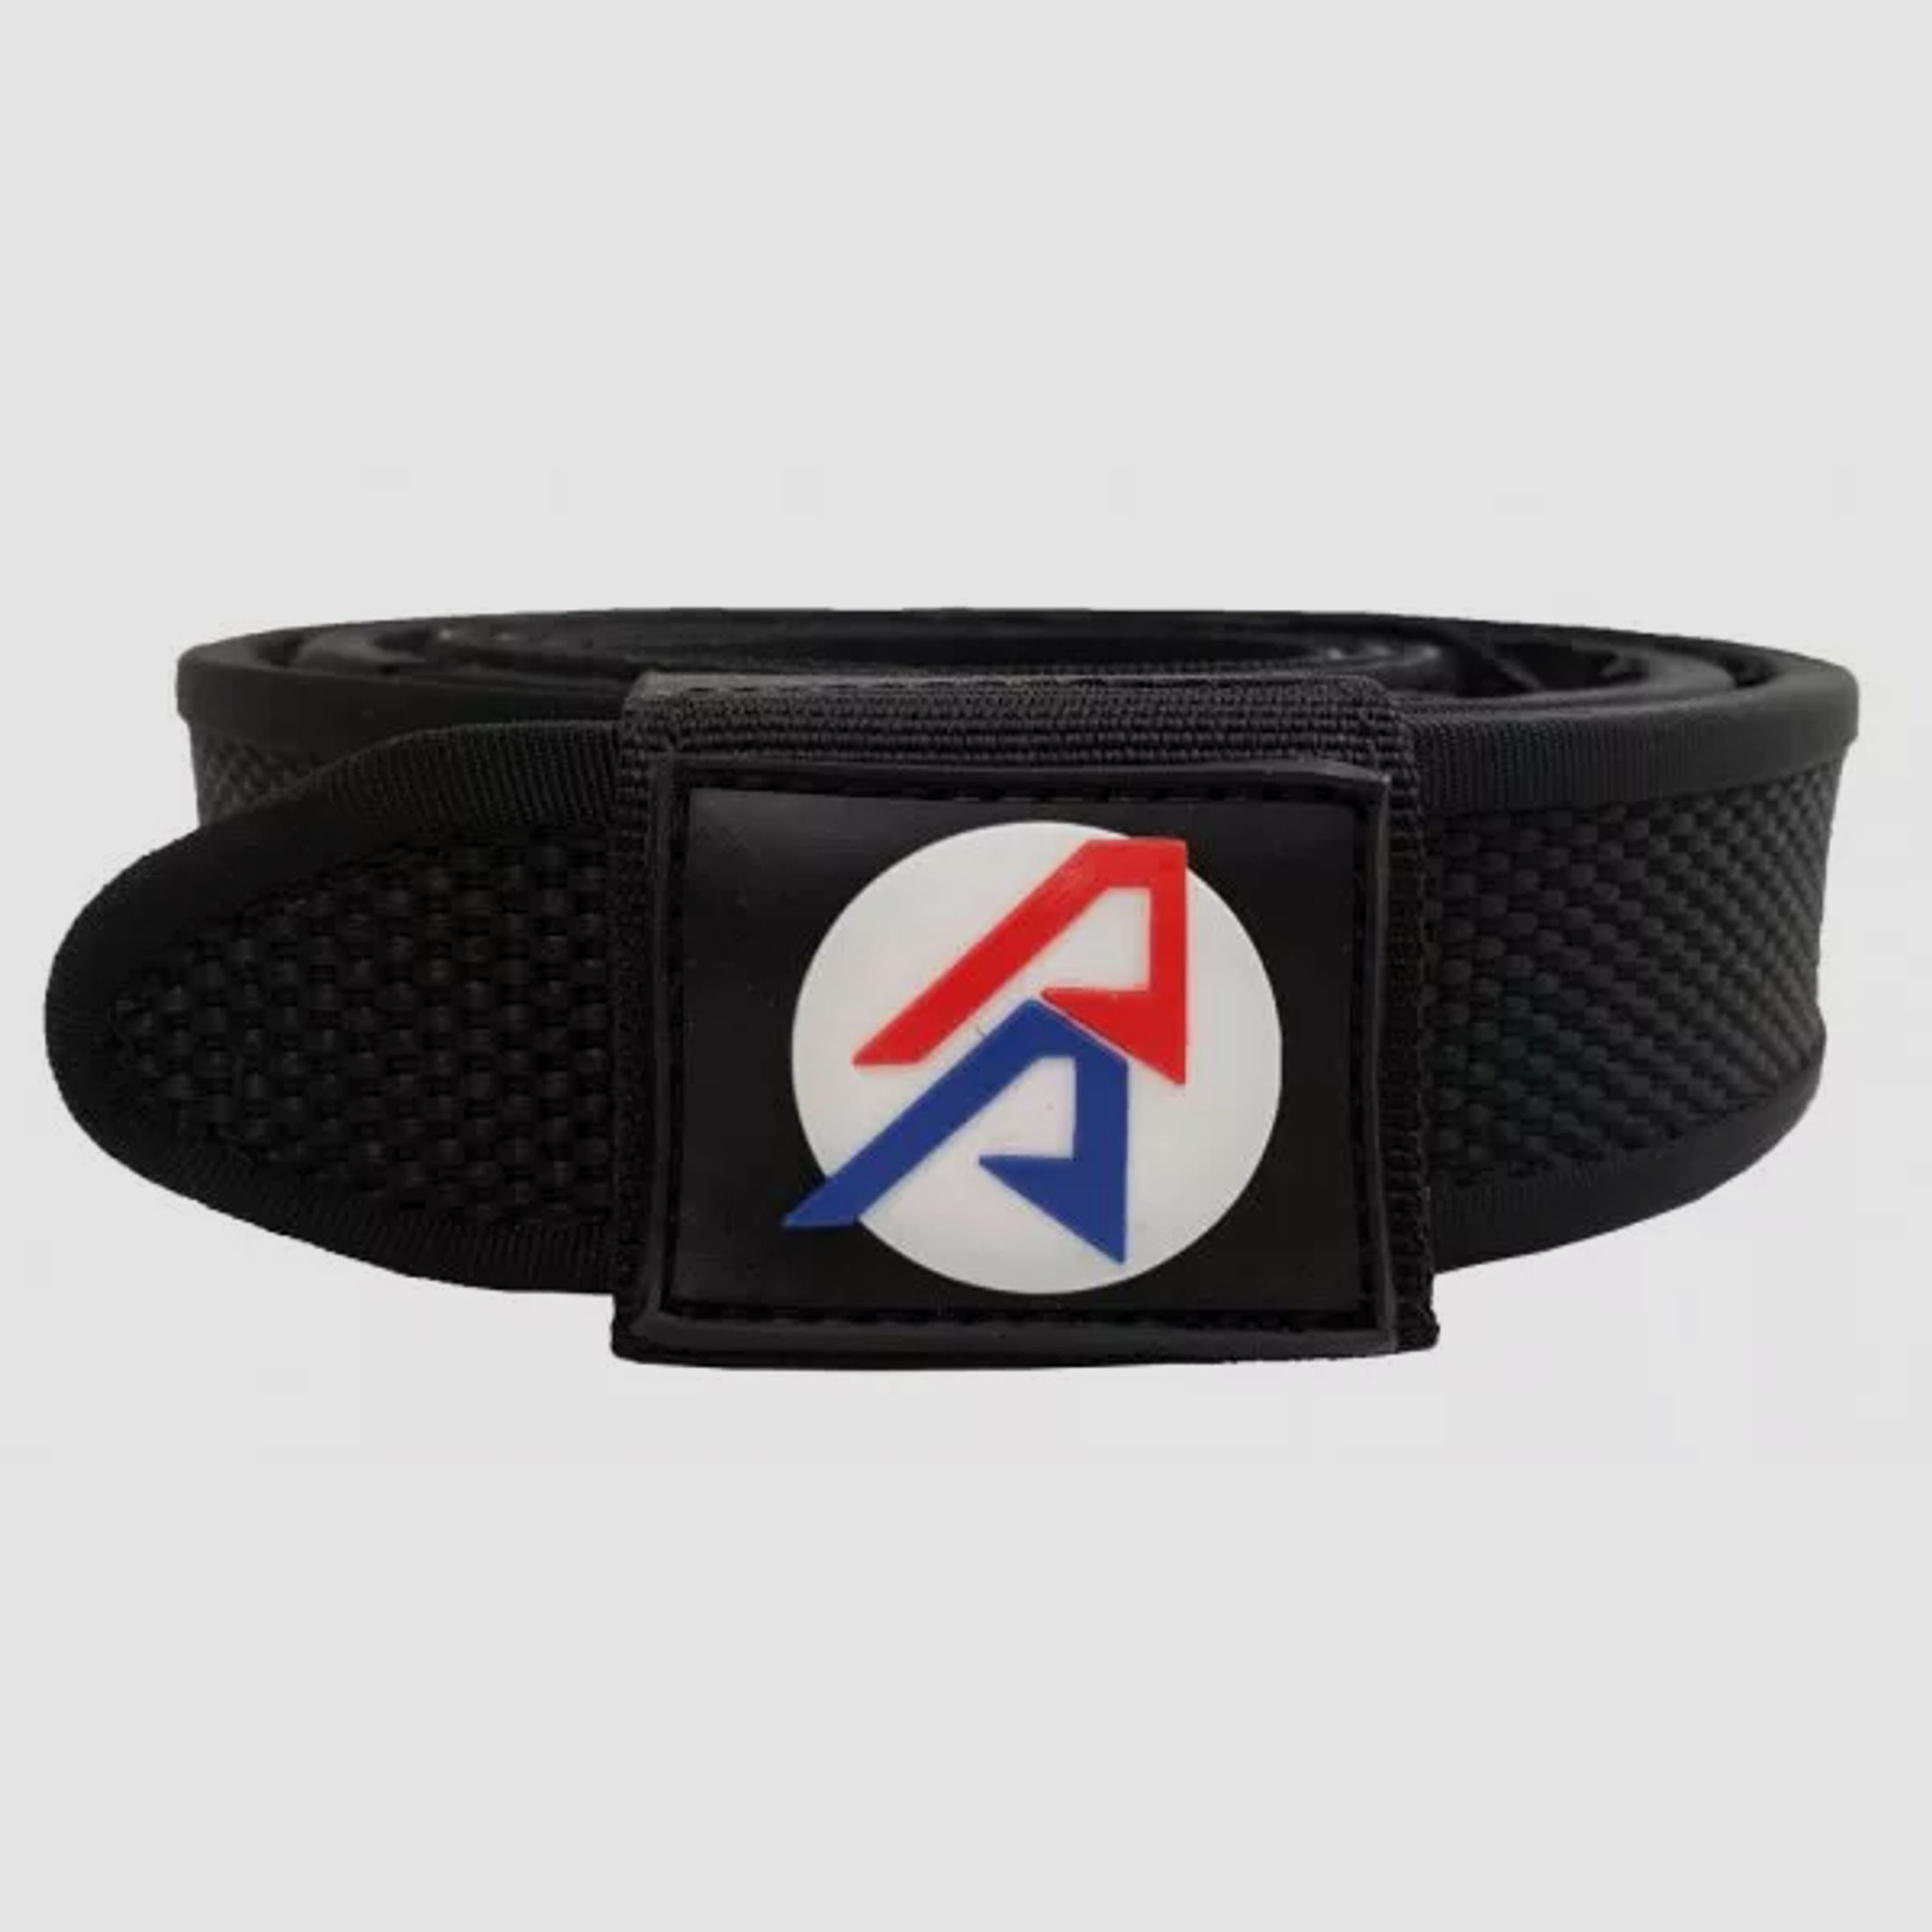 DAA -Double Alpha Premium Belt Black 46